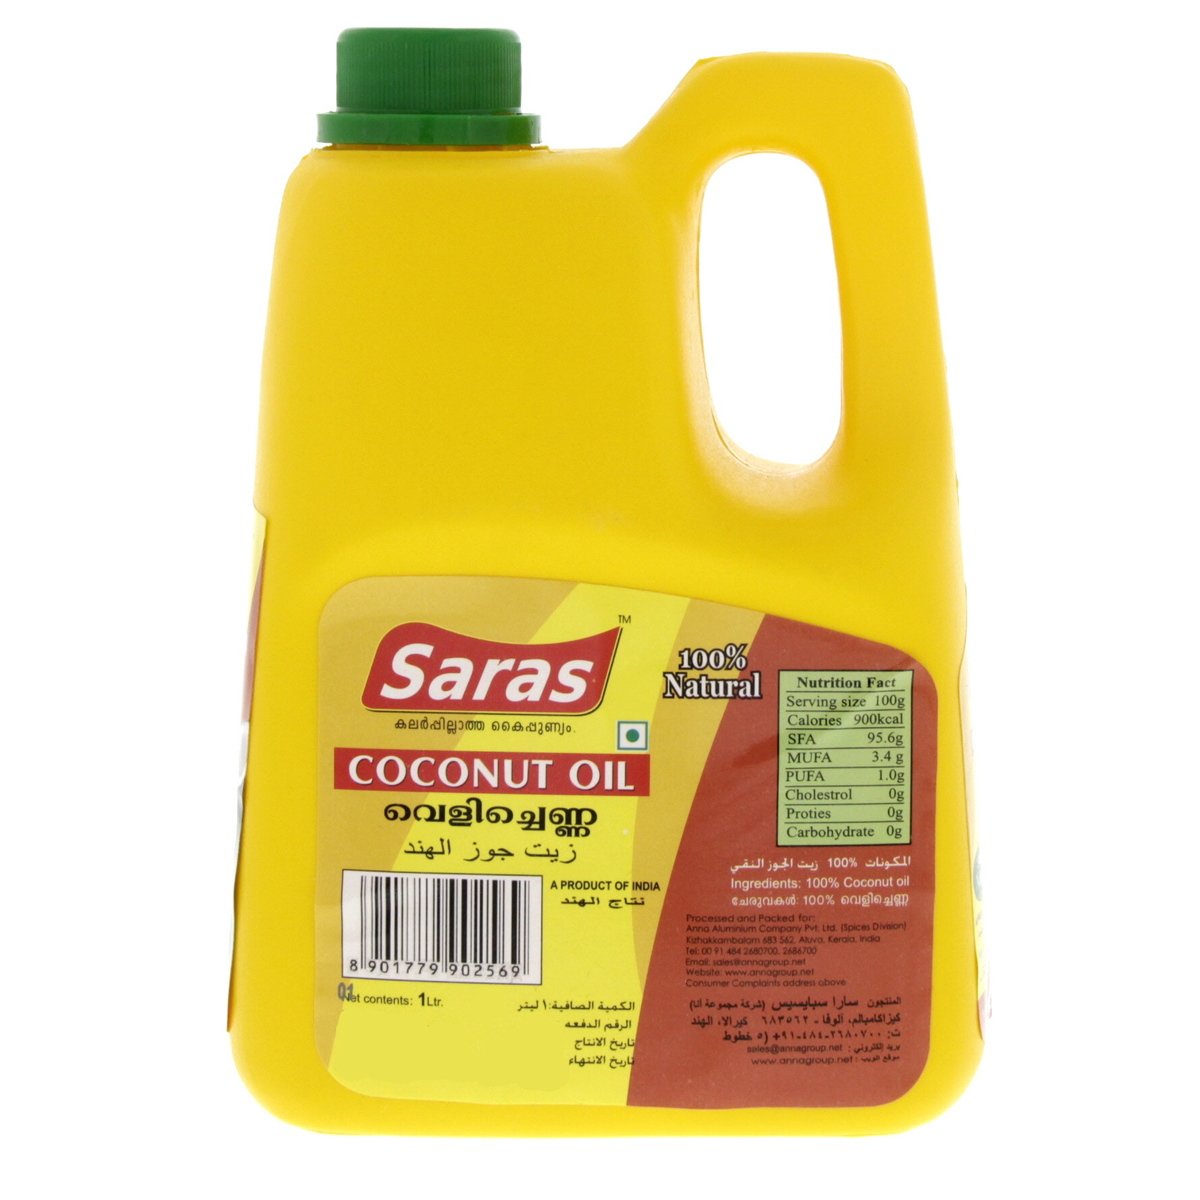 Saras Coconut Oil 1 Litre